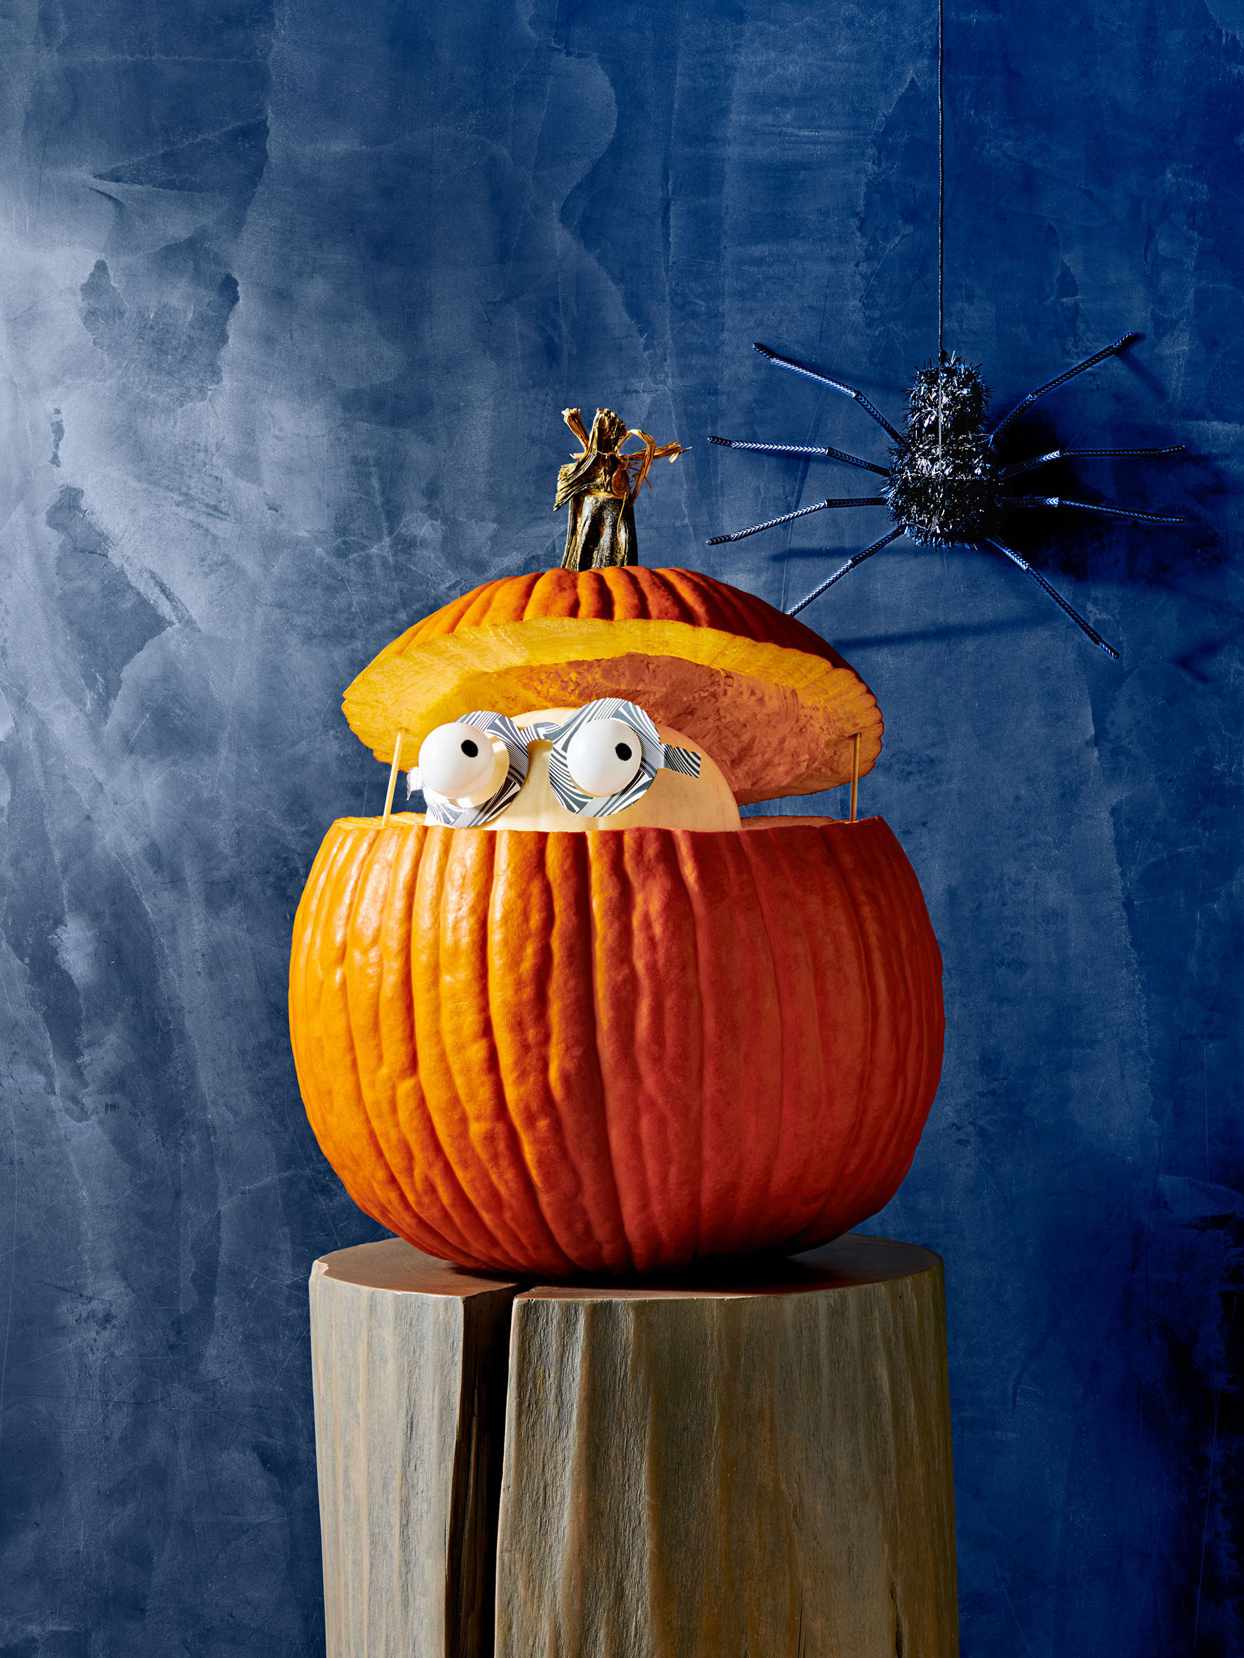 Open pumpkin with figure inside.